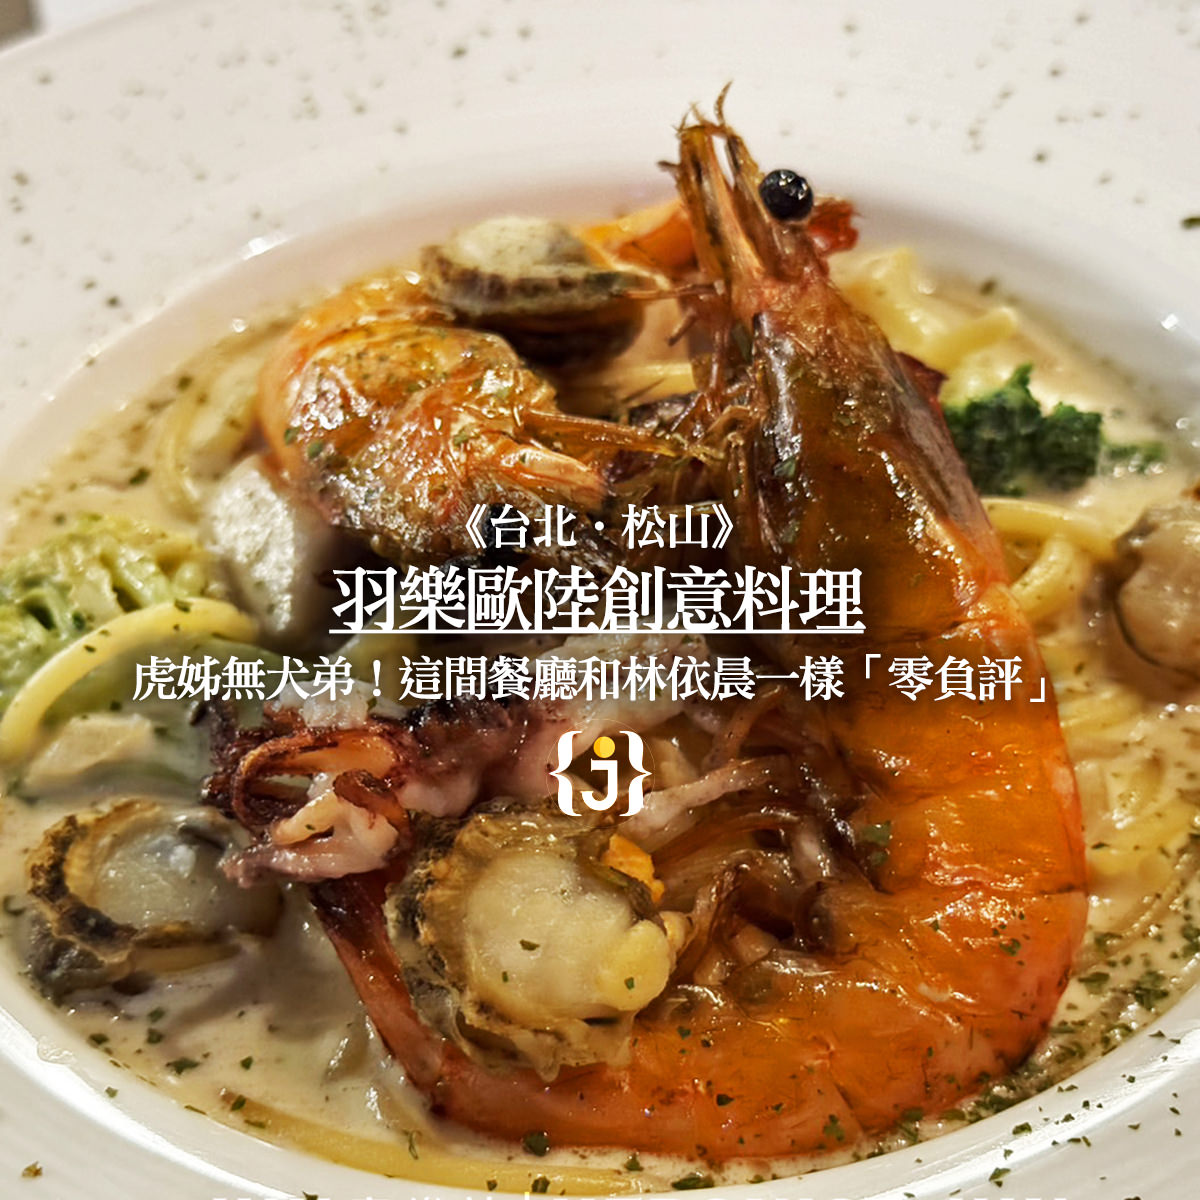 《台北‧松山》羽樂歐陸創意料理附菜單虎姊無犬弟！這間餐廳和林依晨一樣「零負評」